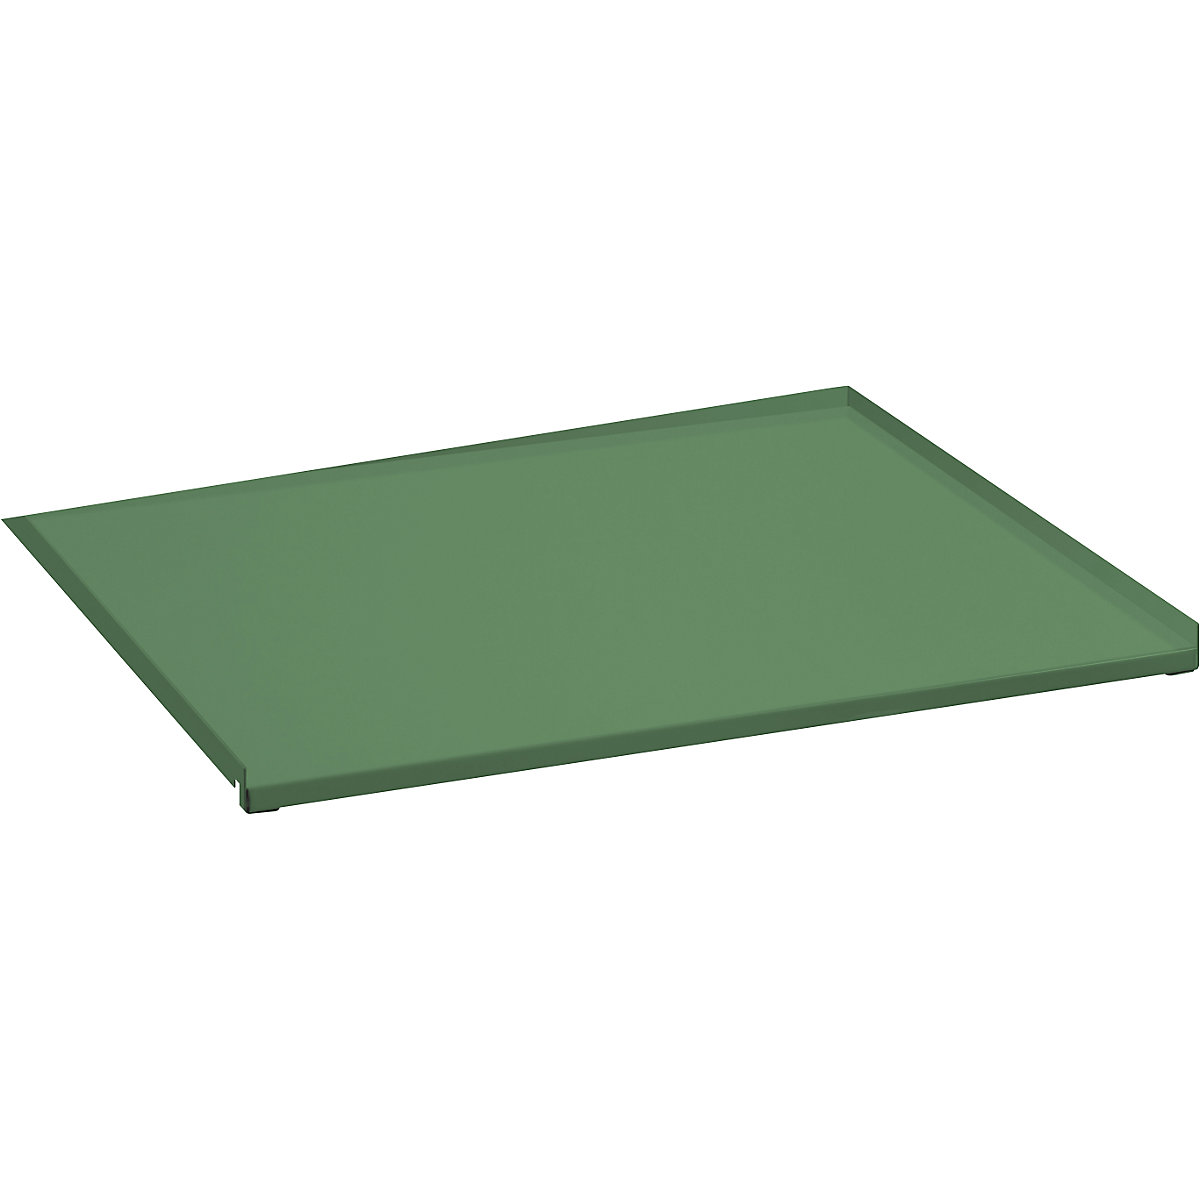 Recouvrement en tôle pour tablette coulissante – LISTA, extraction sur toute la profondeur, pour l x p 890 x 860 mm, vert réséda-2